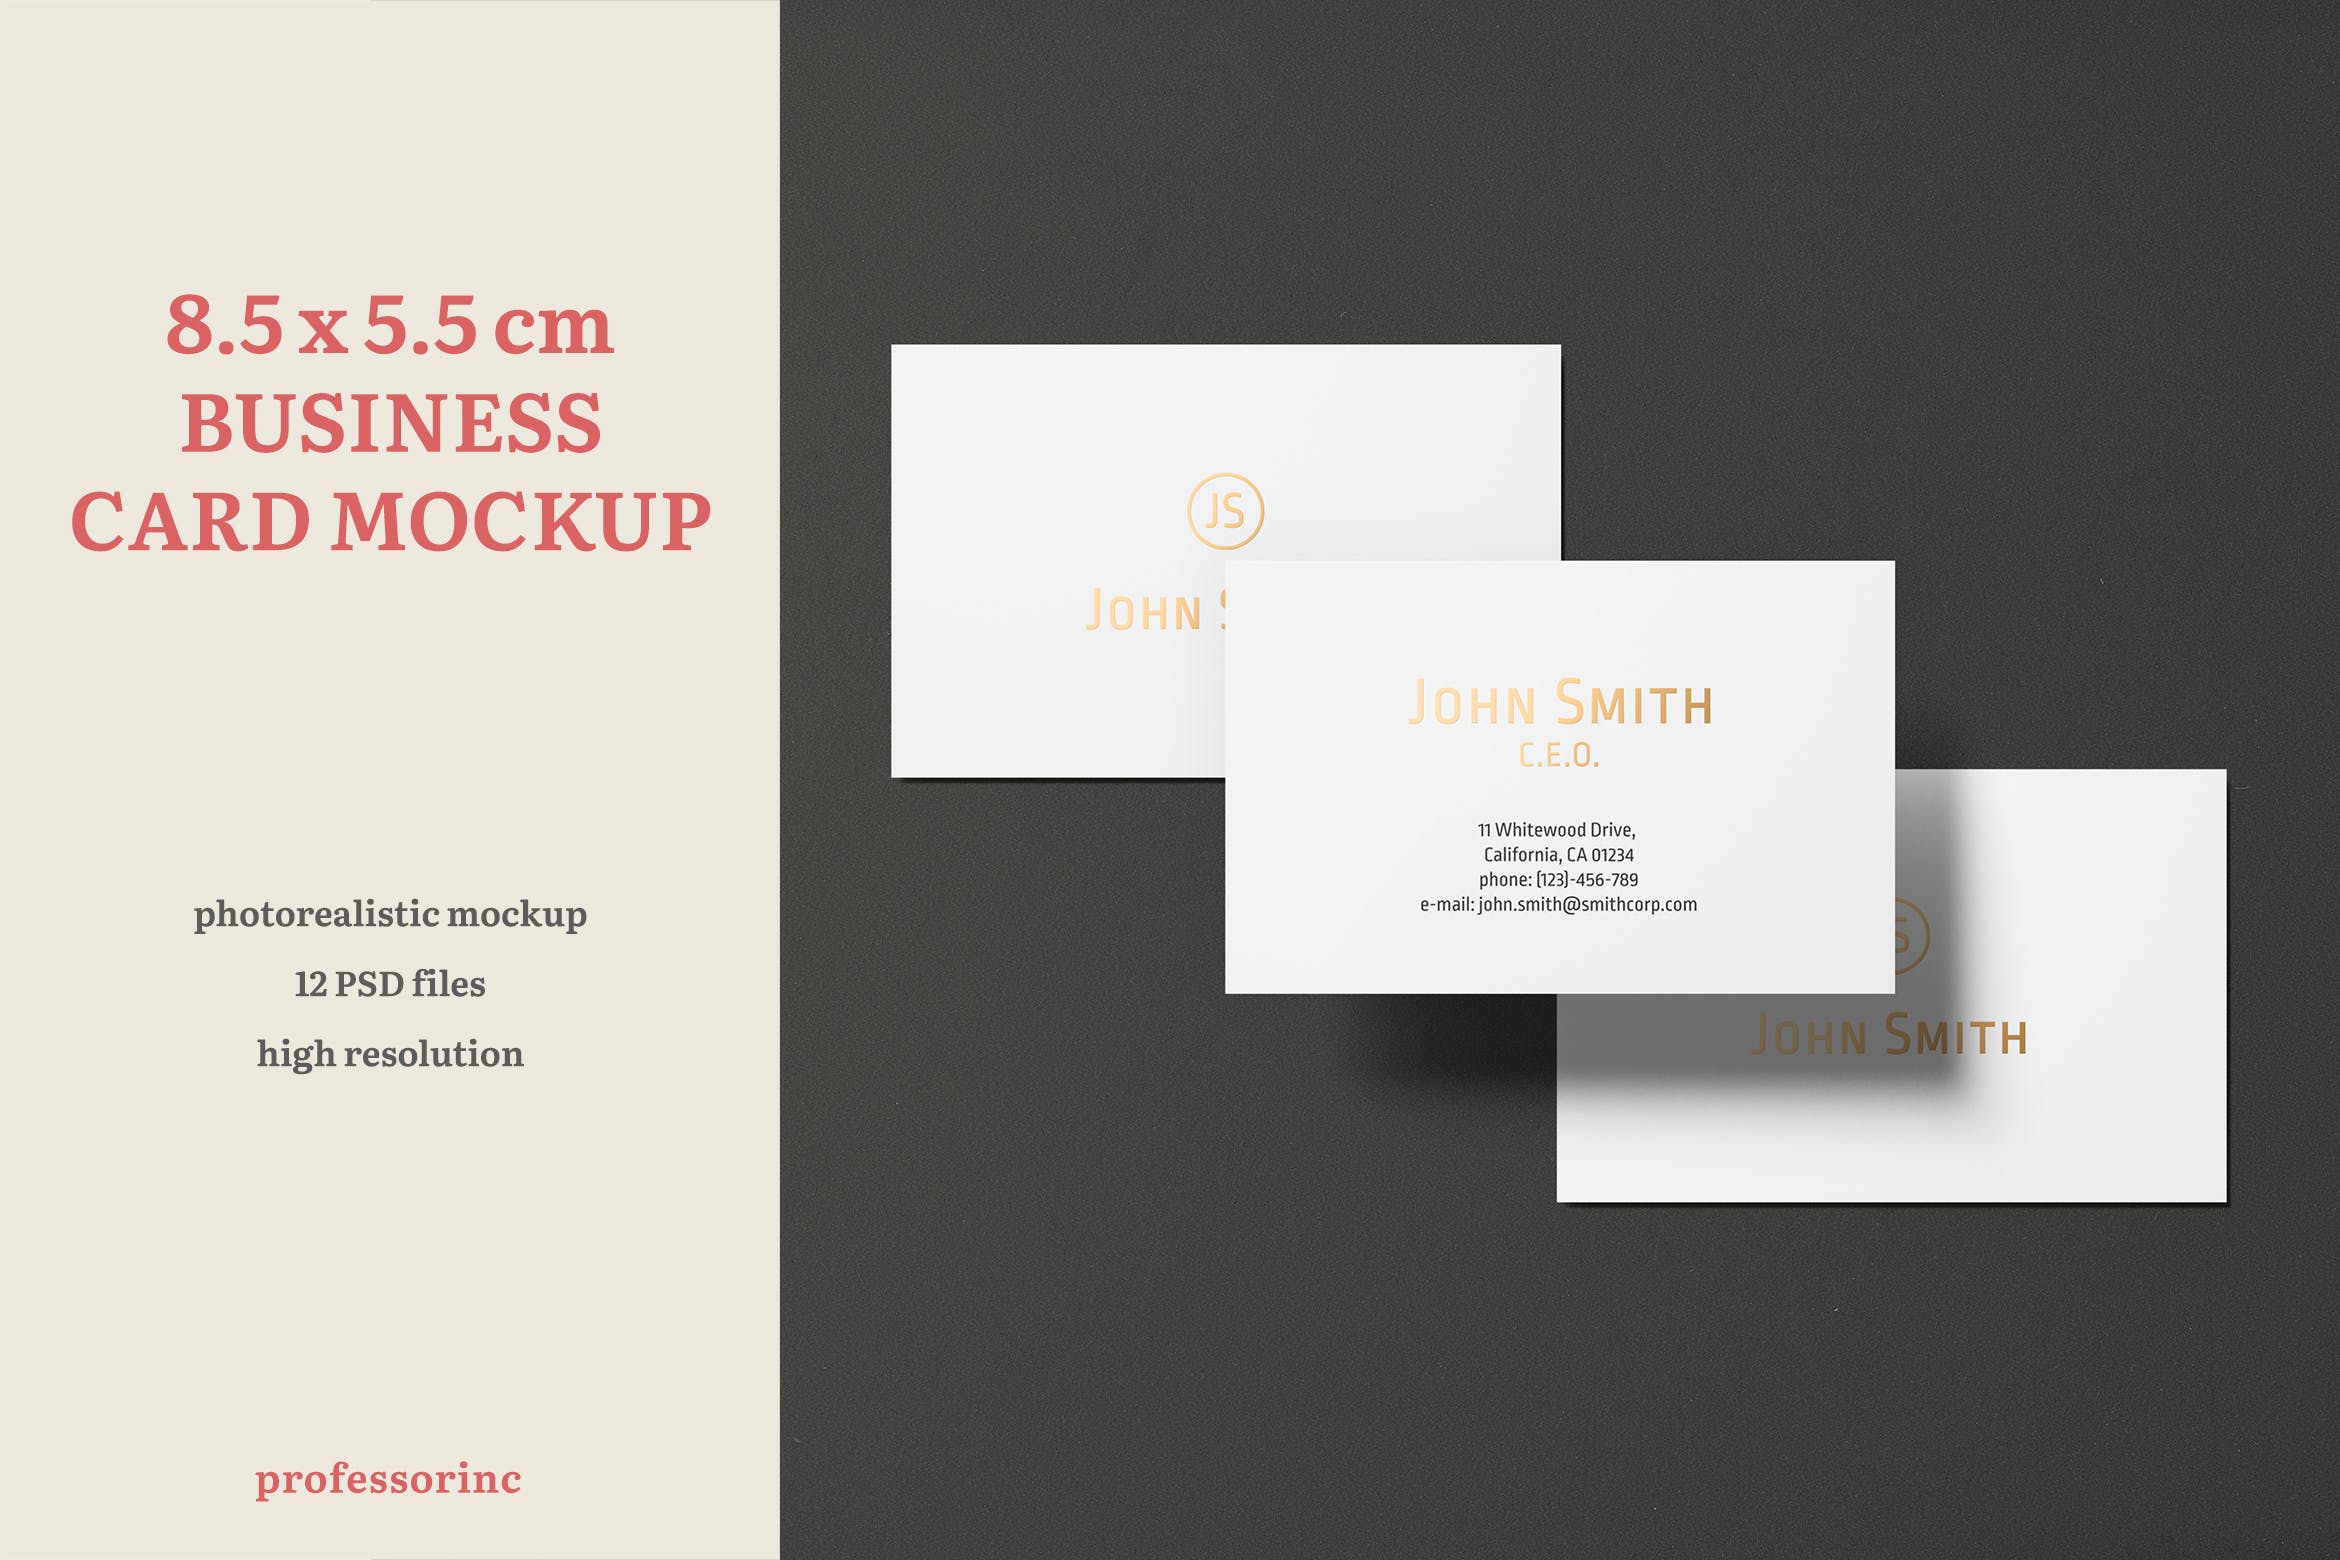 高端企业名片设计效果图蚂蚁素材精选套装 8.5×5.5cm Landscape Business Card Mockup插图